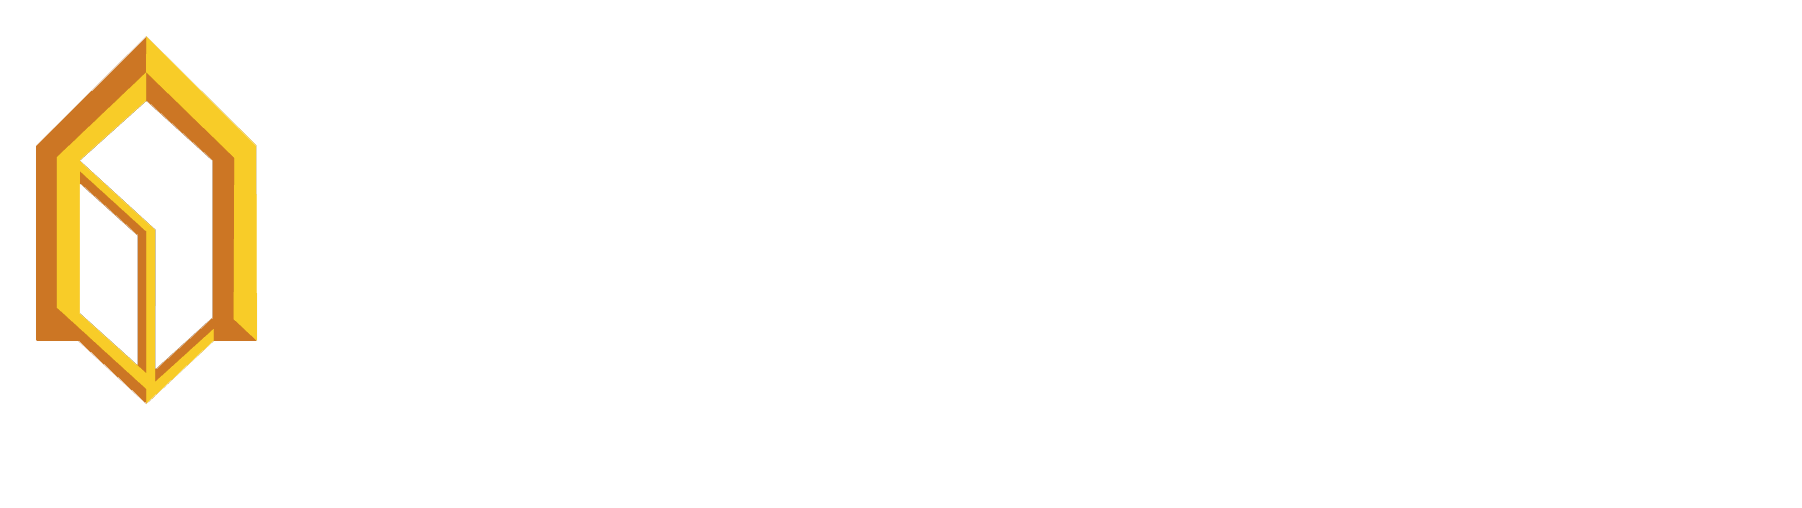 FHLB Logo